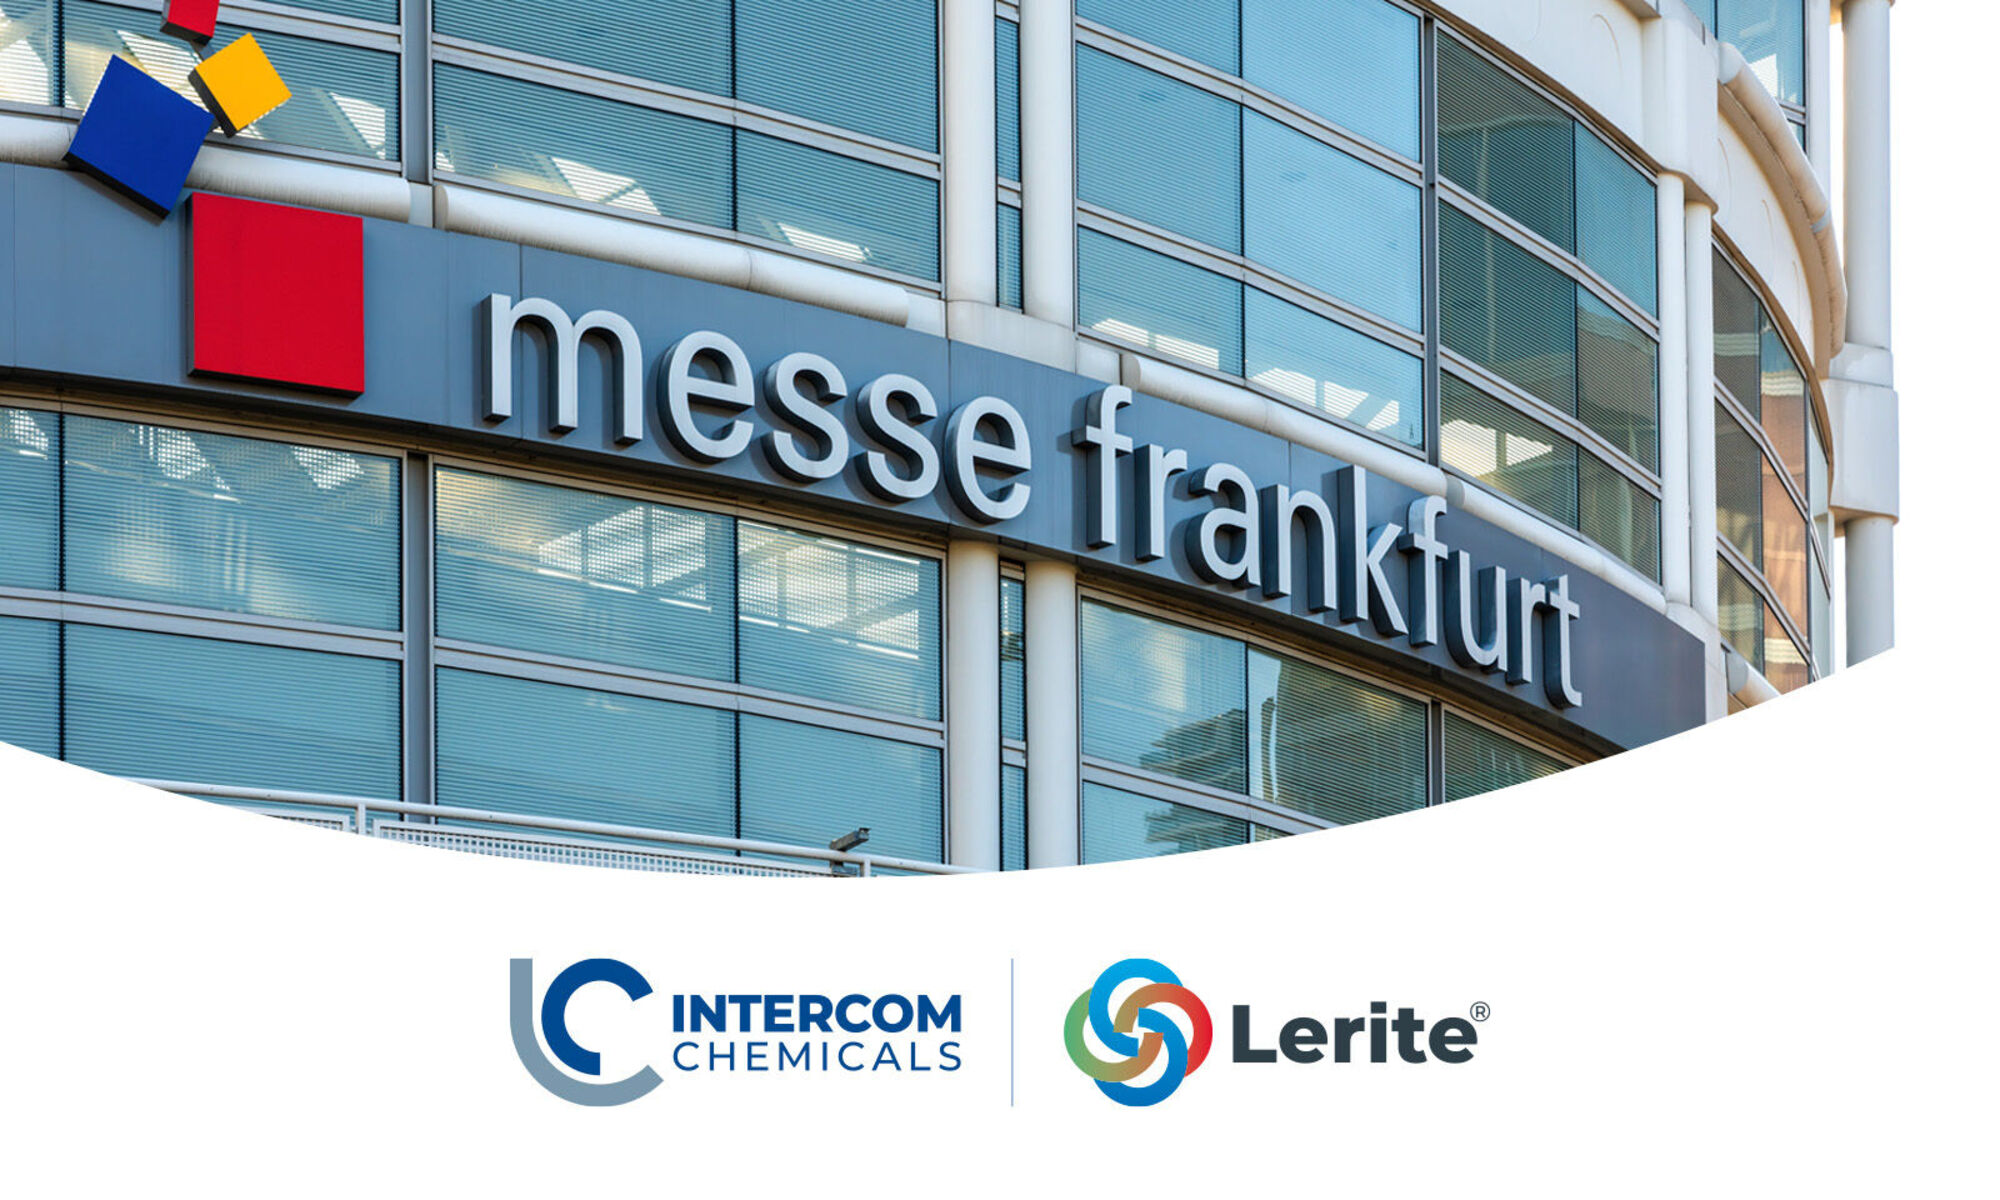 Ambiente Fair 2023, Intercom chemicals in Frankfurt with Lerite® Rice